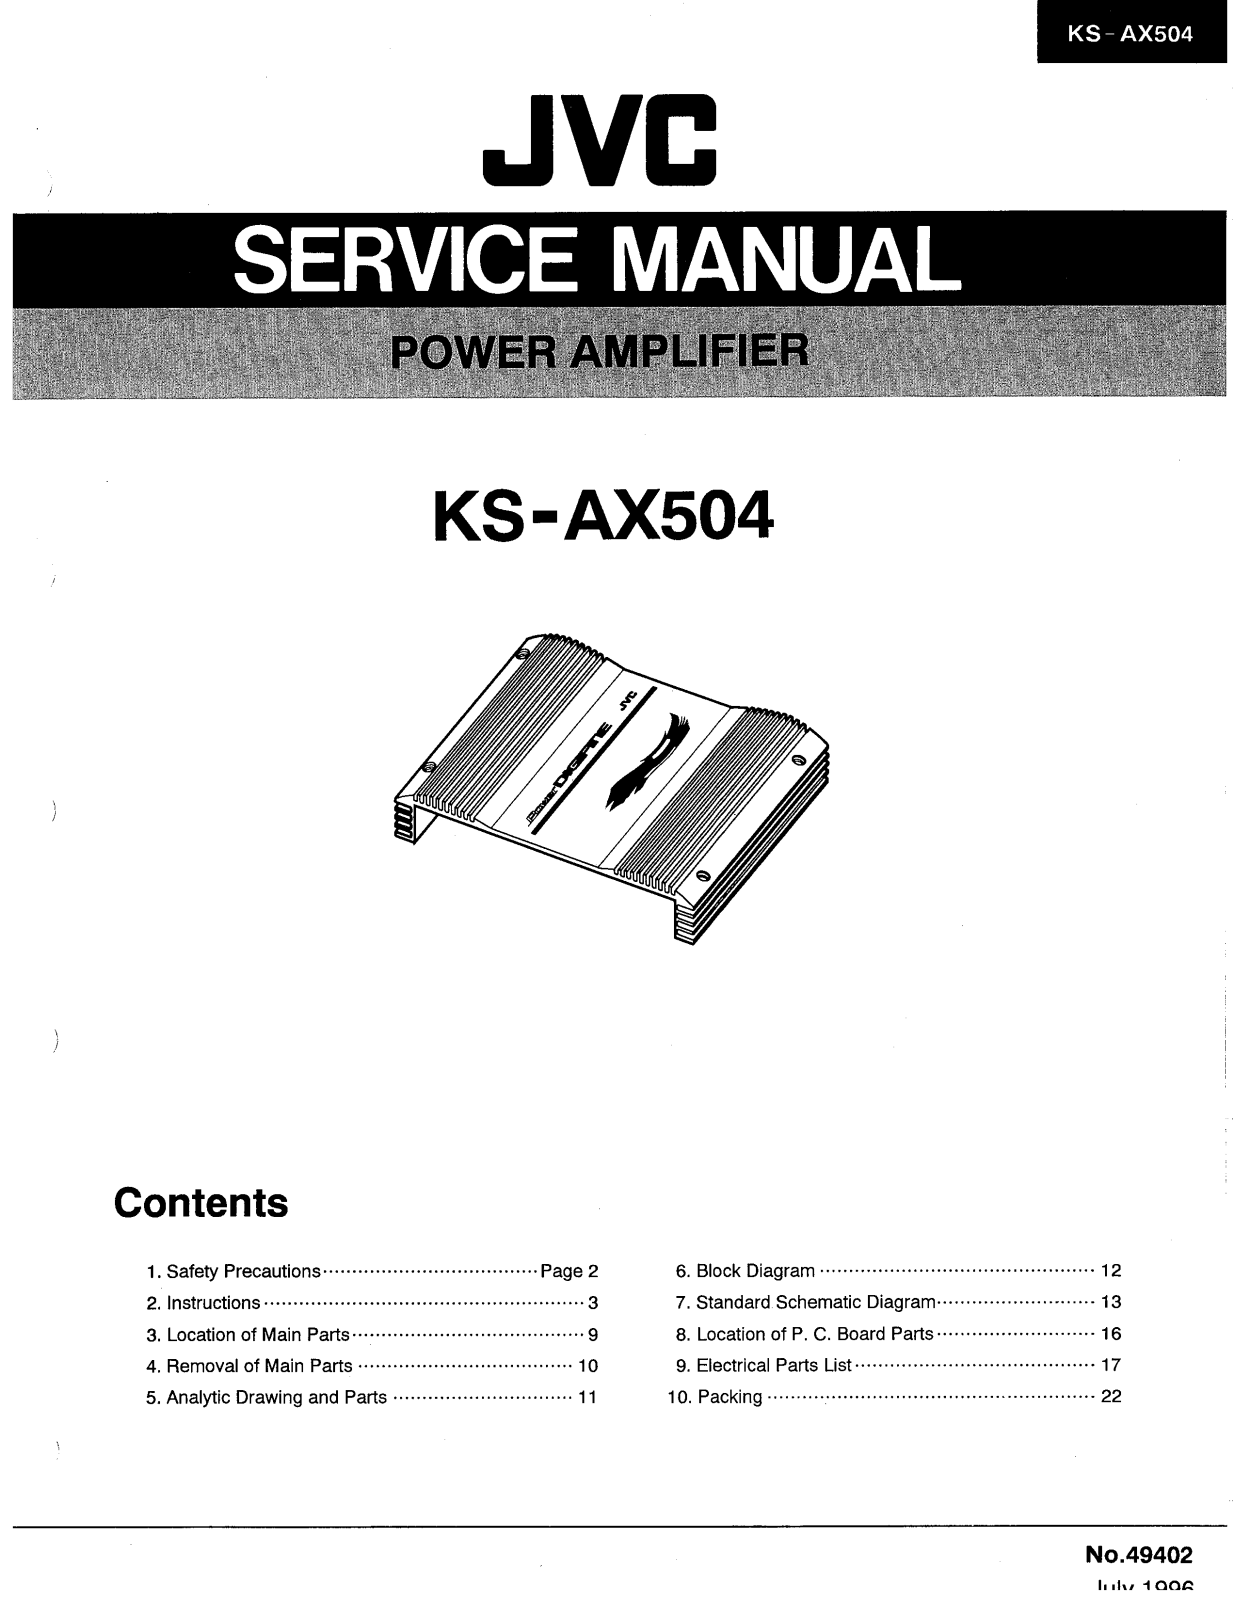 JVC KS-AX504 Service Manual